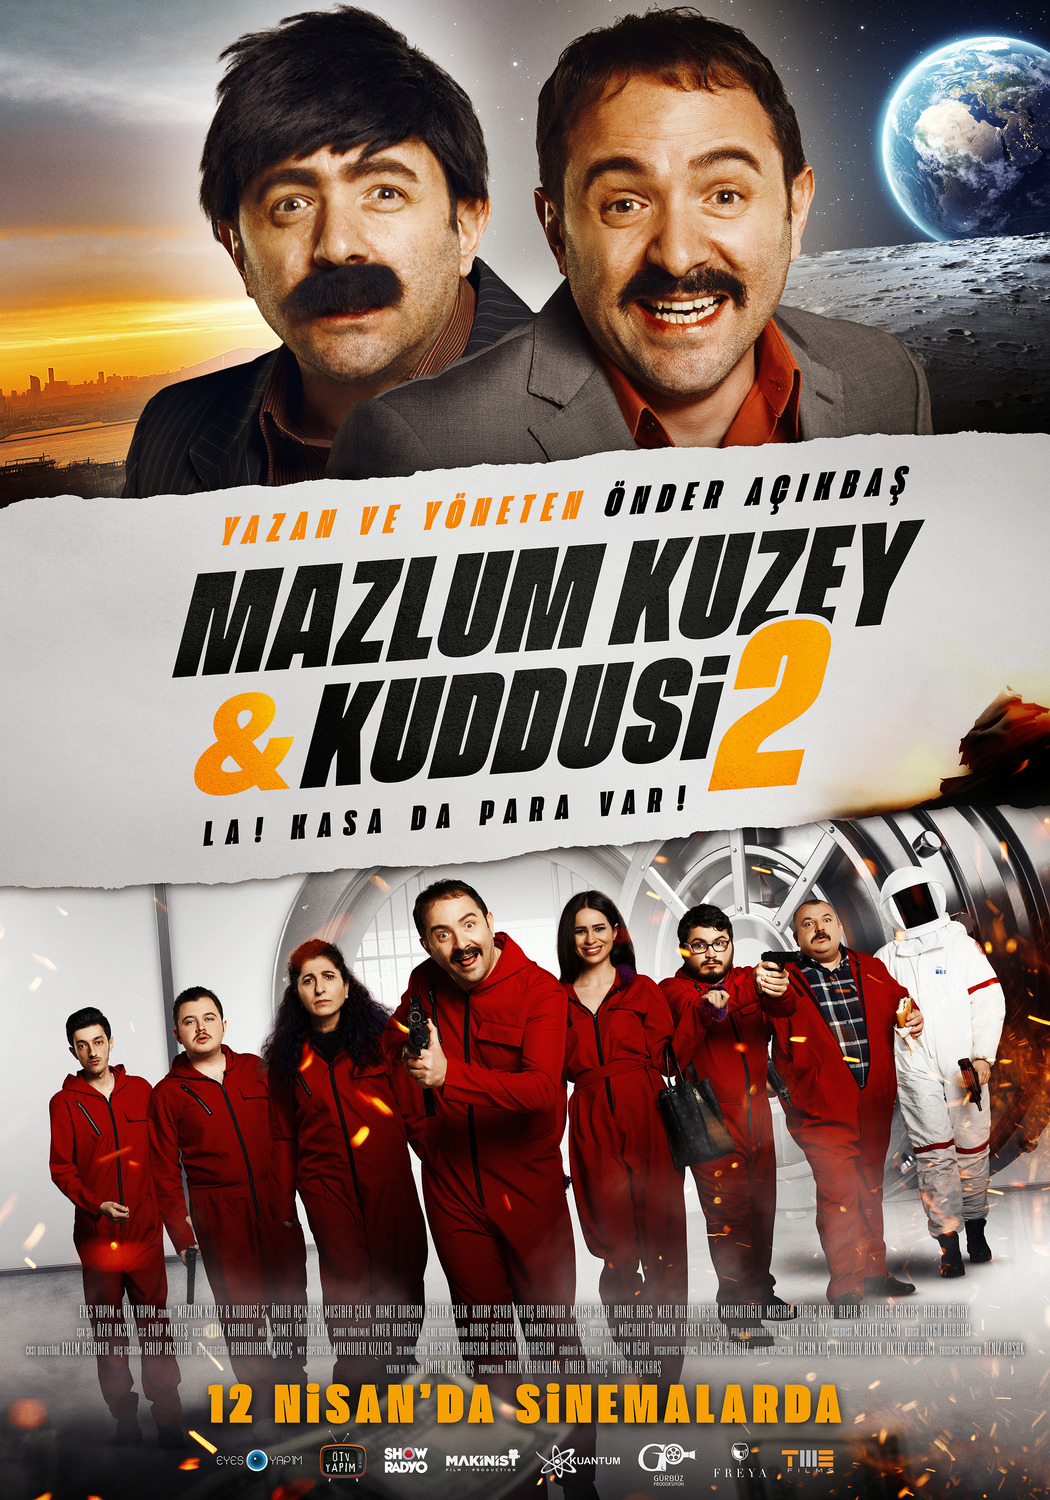 Extra Large Movie Poster Image for Mazlum Kuzey & Kuddusi 2 La! Kasada Para Var! (#1 of 3)